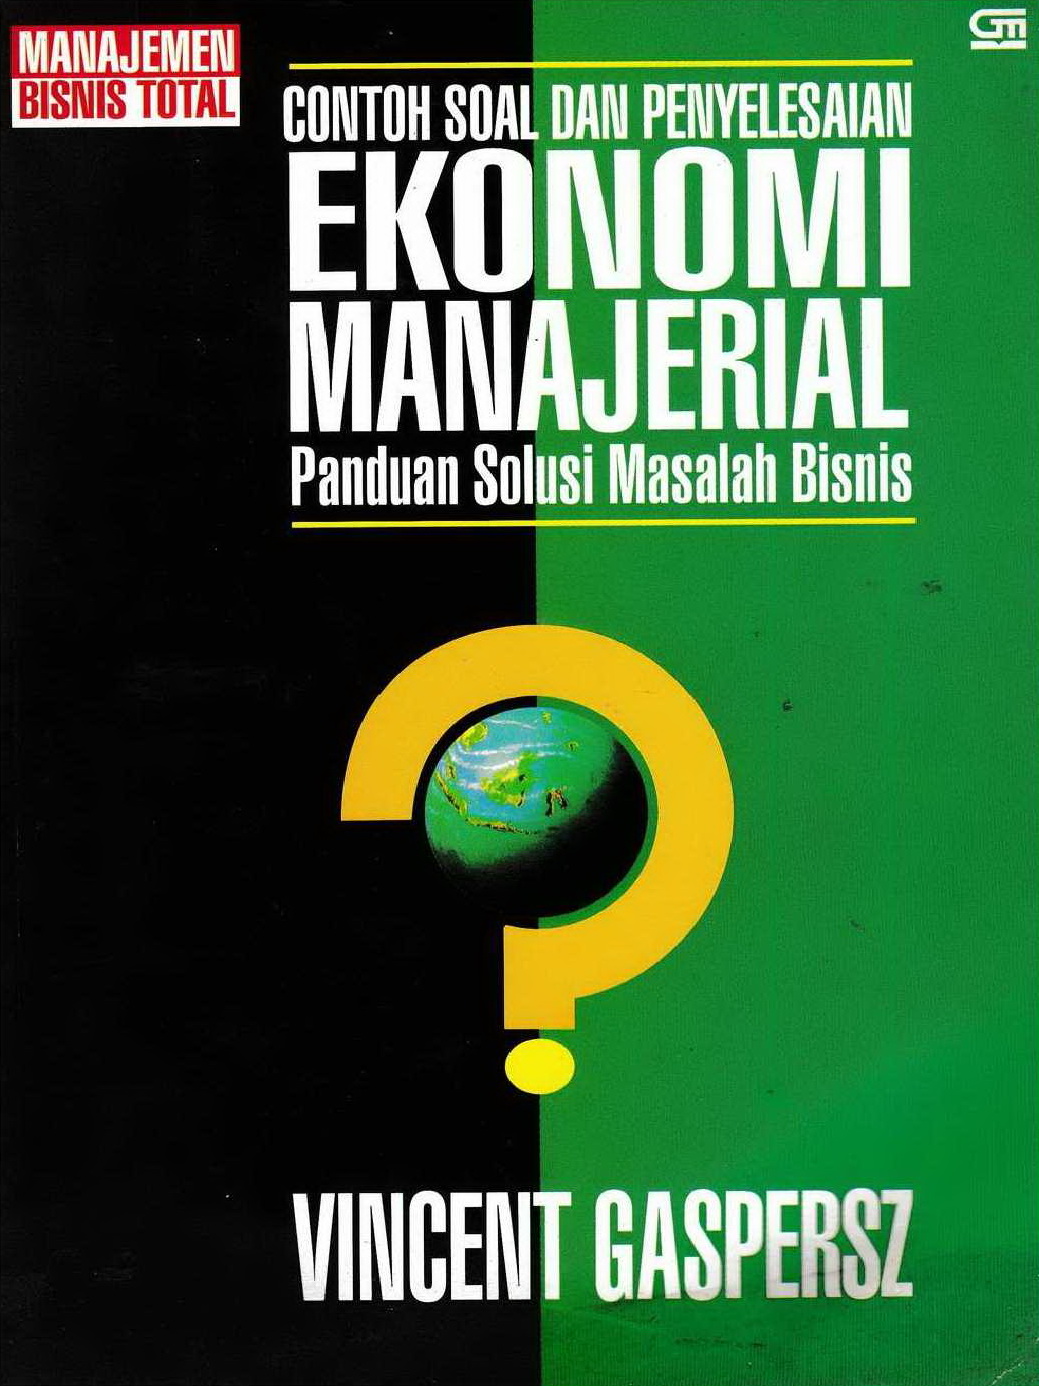 1999 Contoh Soal dan Penyelesaian Ekonomi Manajerial Panduan Solusi Masalah Bisnis VG